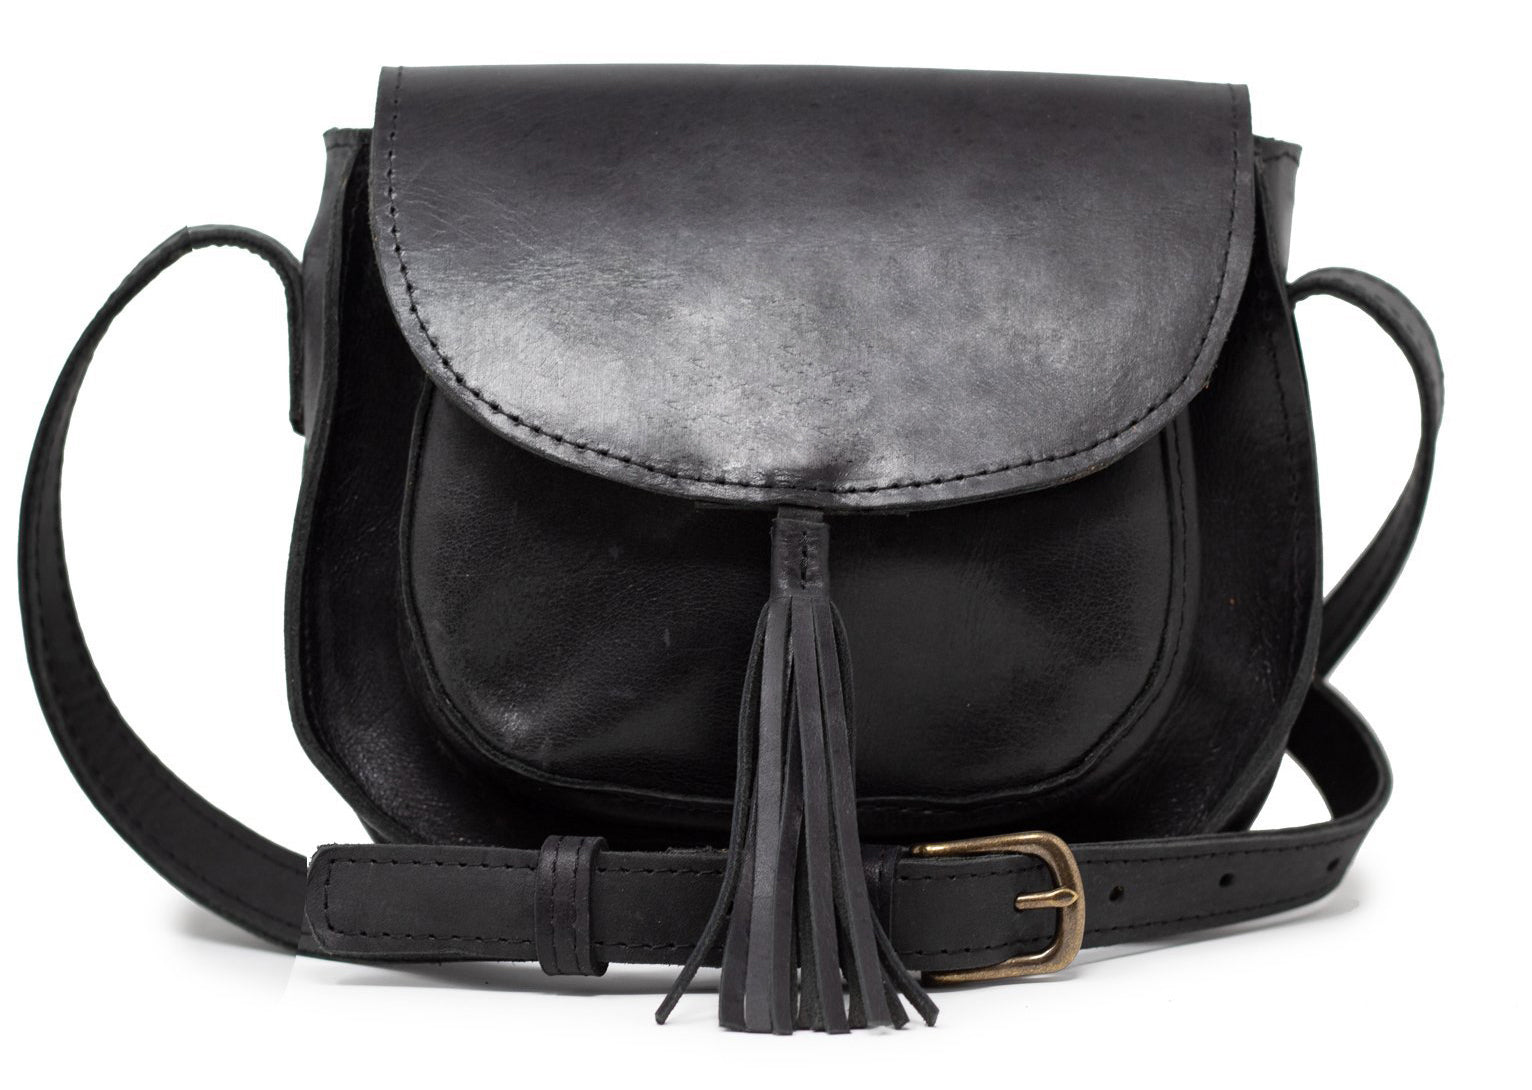 Able - Black leather shoulder bag - S19 tassel crossbody black bag